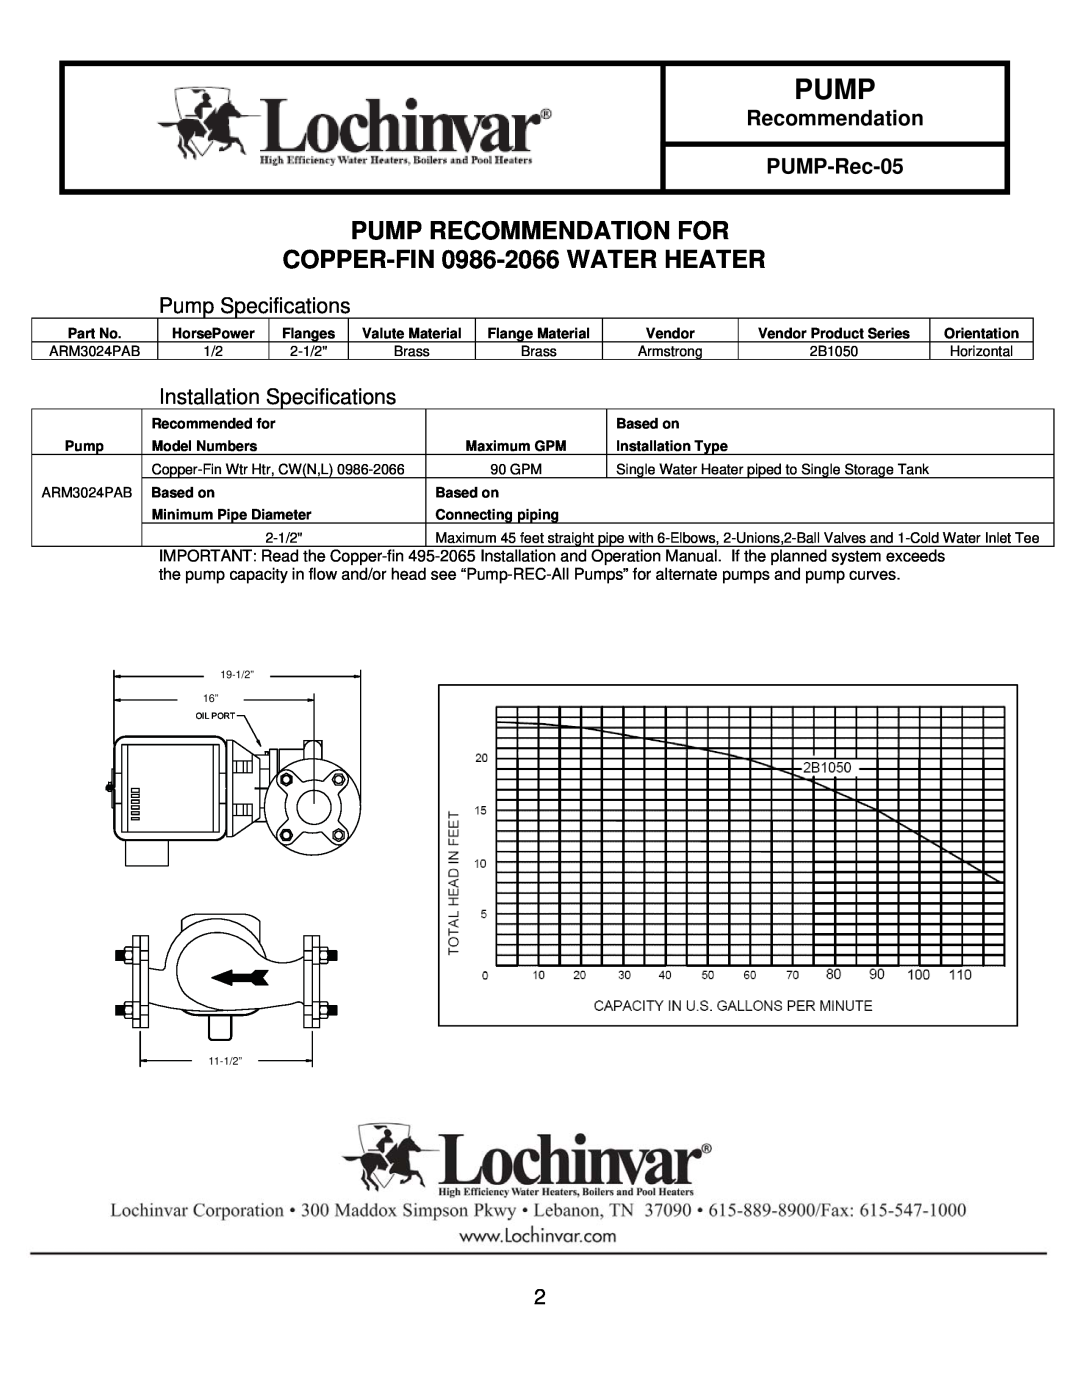 Lochinvar PUMP-REC-05 REV B specifications Recommendation PUMP-Rec-05, Pump Specifications, Installation Specifications 